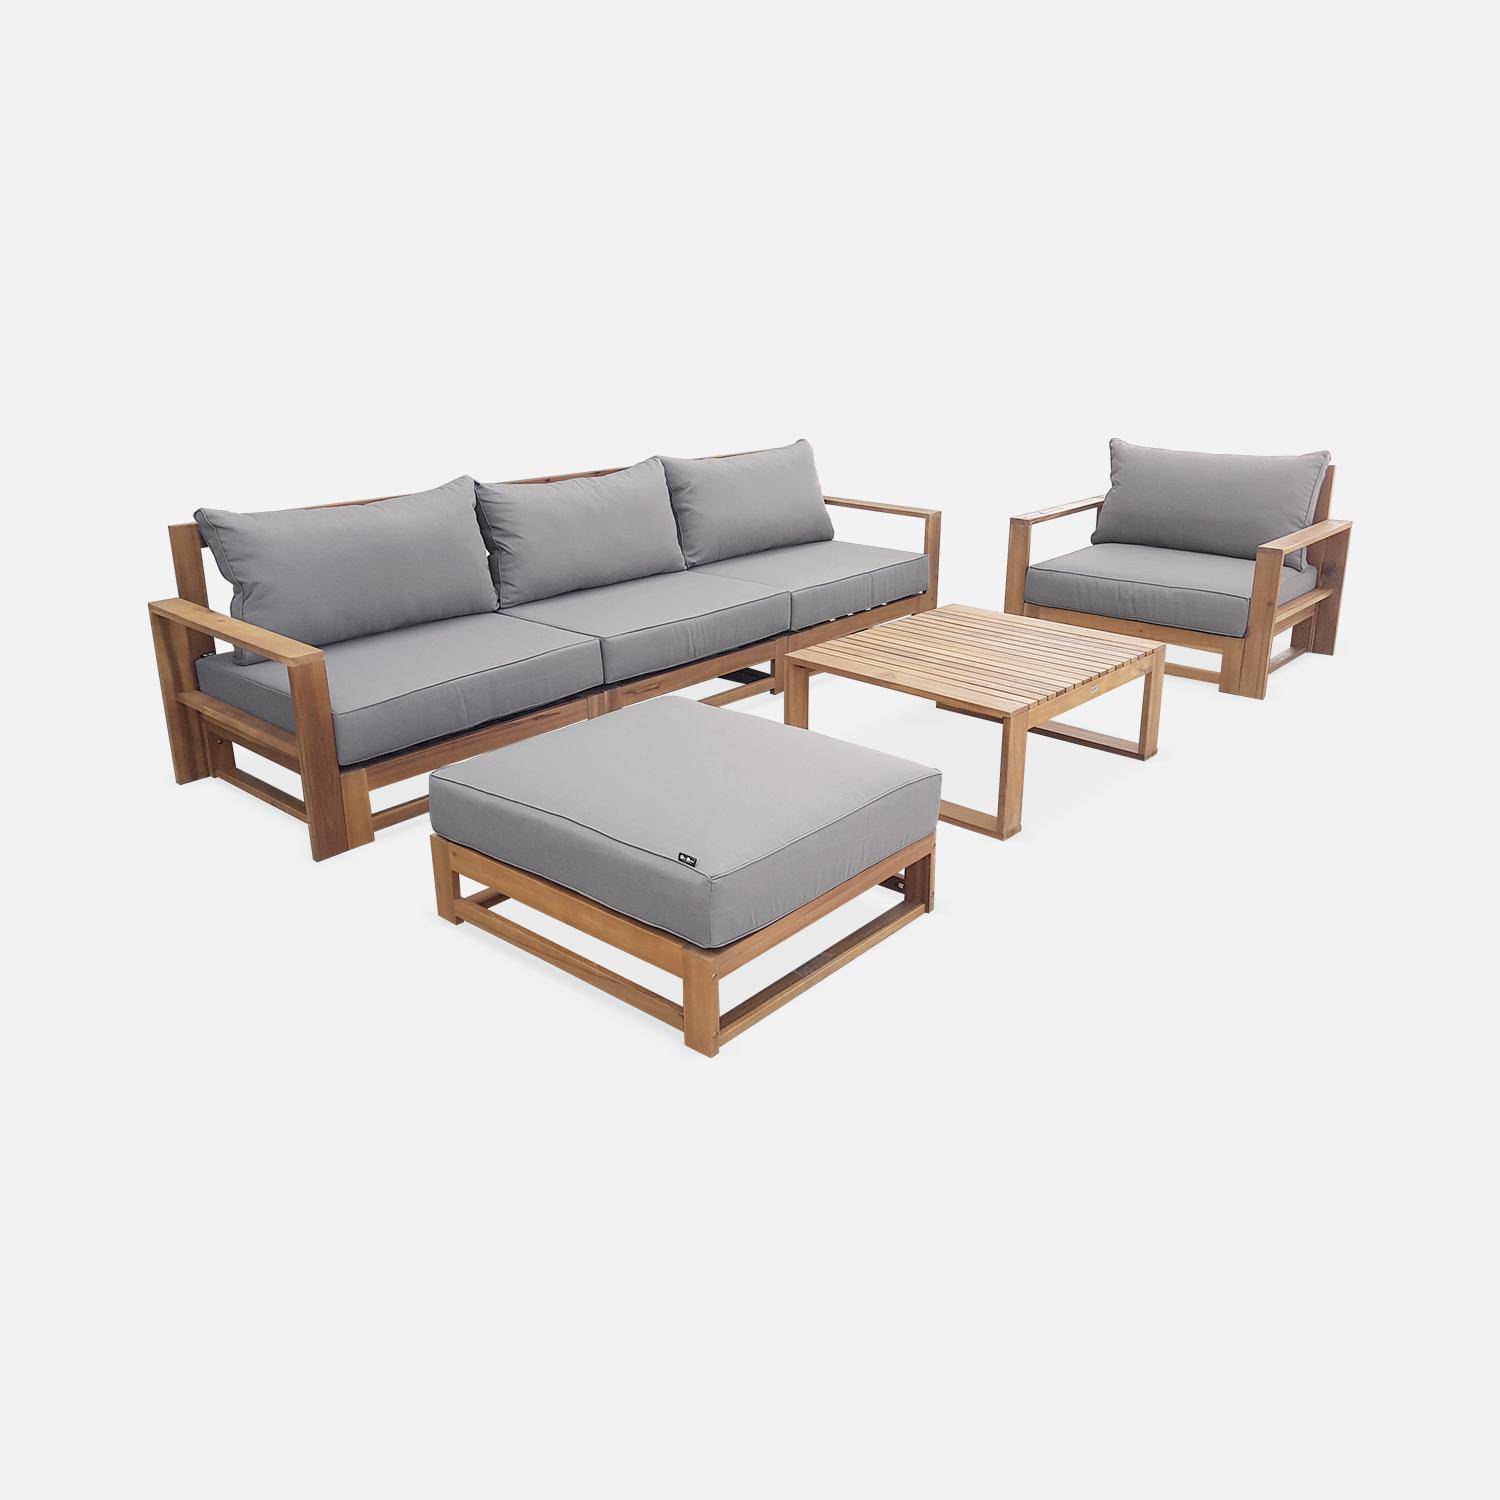 Gartenmöbel aus Holz mit 5 Sitzplätzen - Mendoza - graue Kissen, Sofa, Sessel und Couchtisch aus Akazie, 6 modulare Elemente, Design,sweeek,Photo4